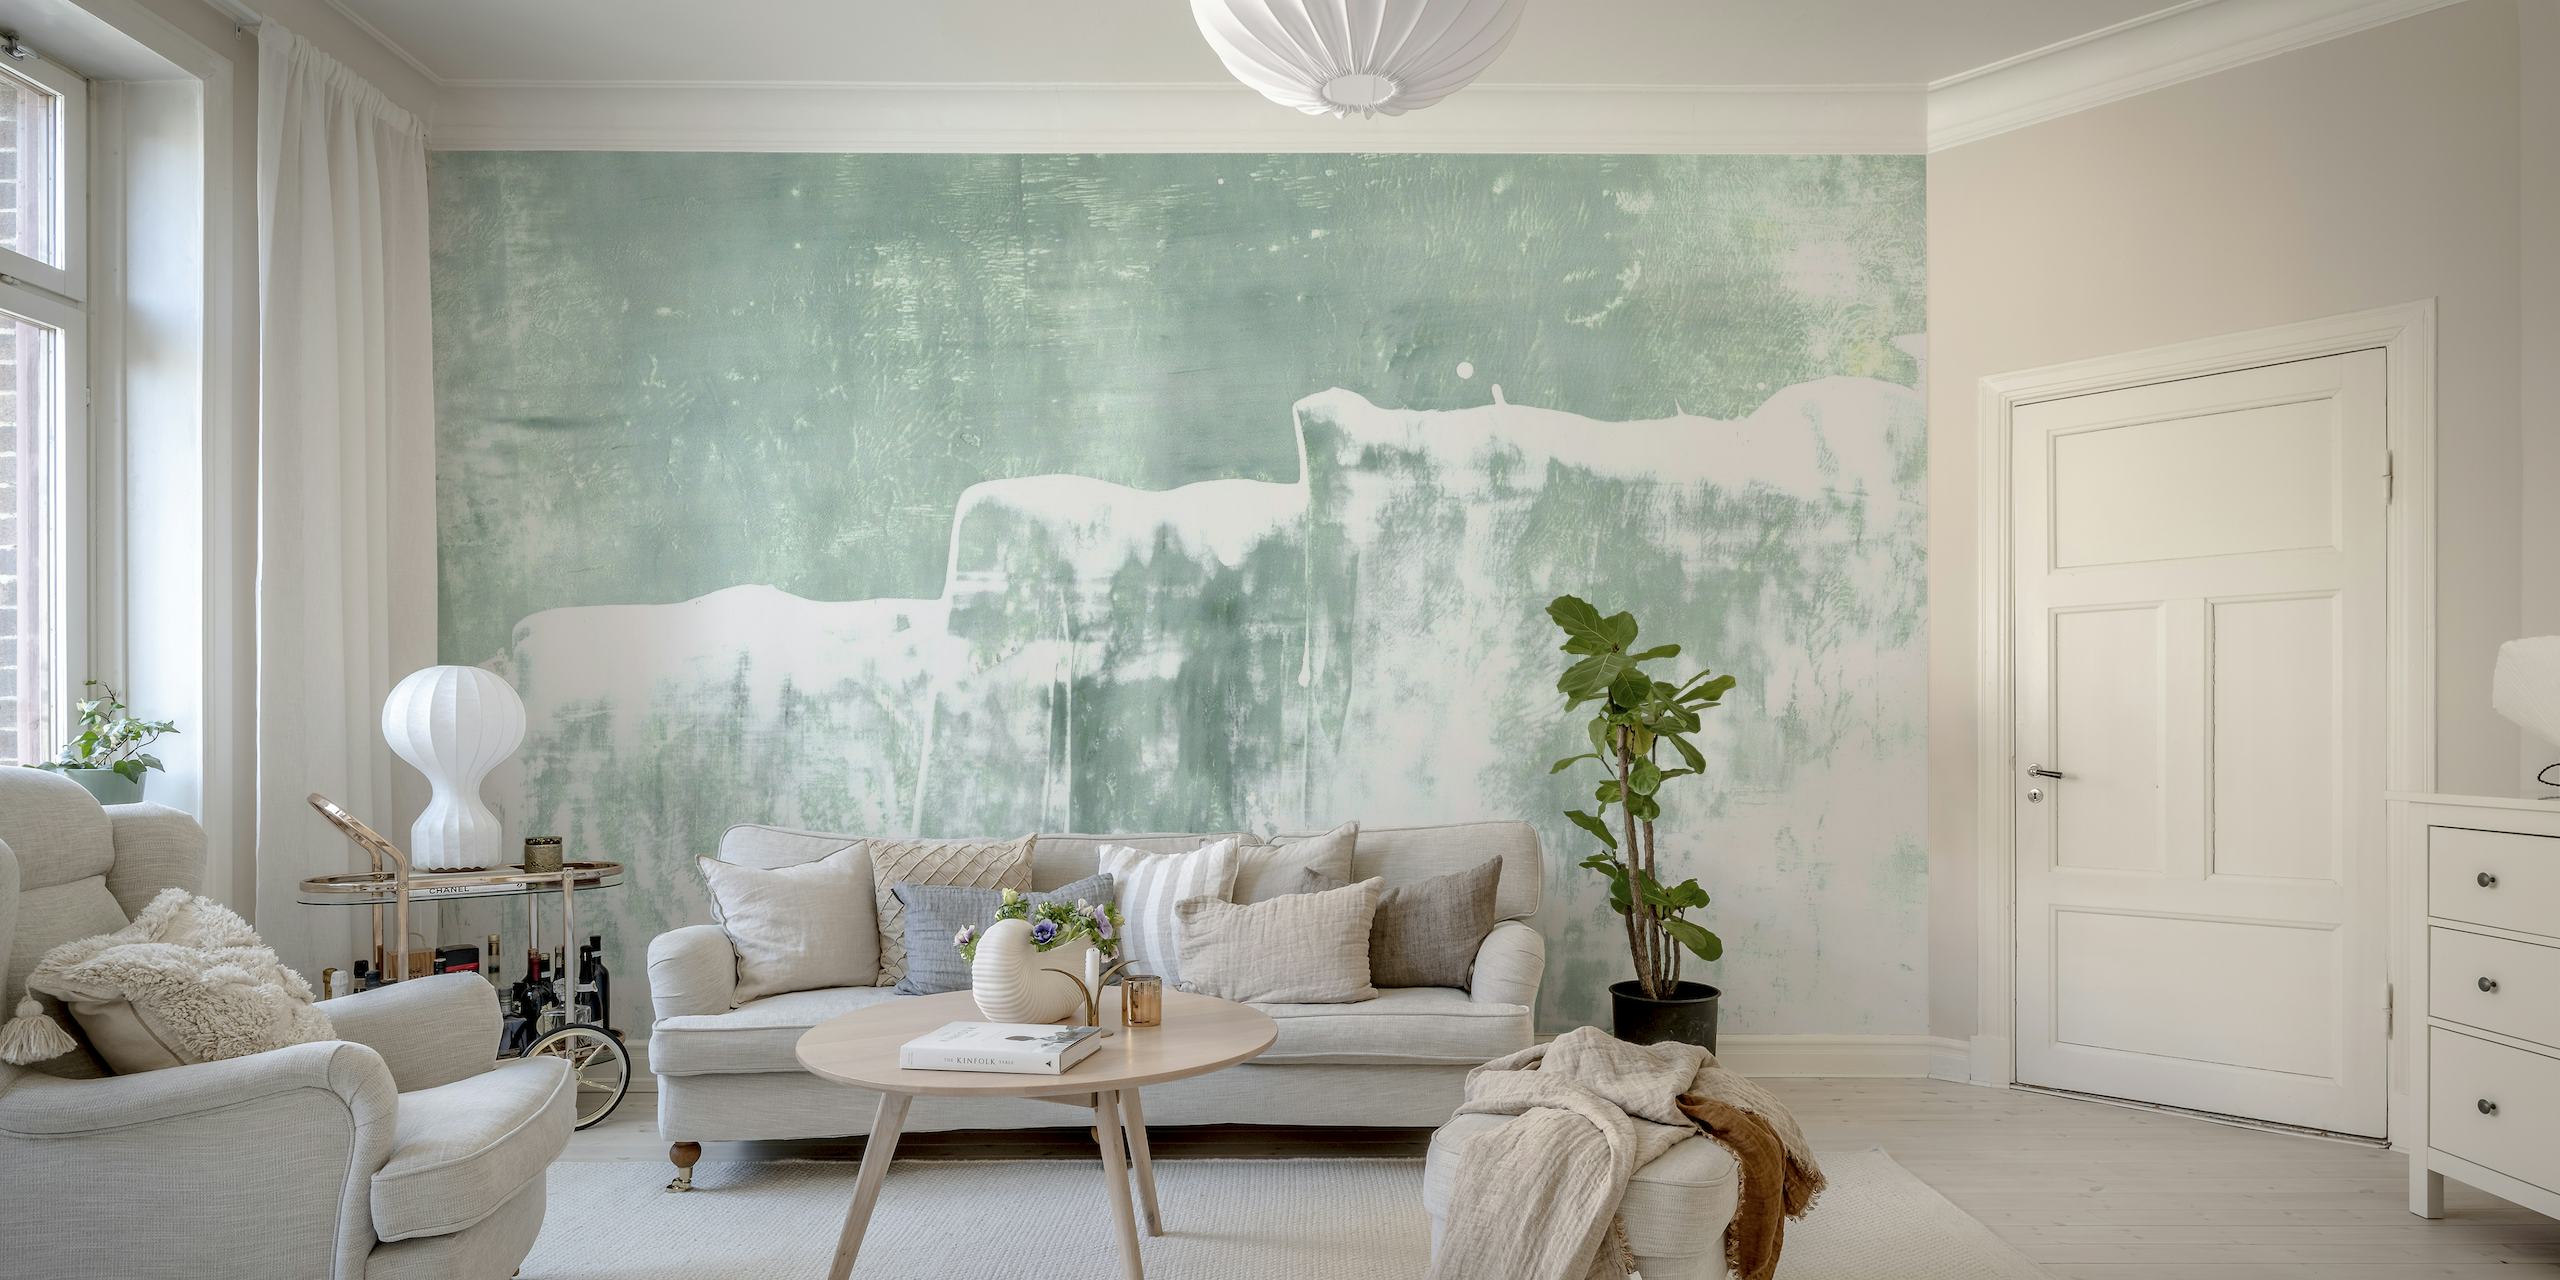 Mint Waves abstrakt maleri vægmaleri med bløde grønne og hvide penselstrøg